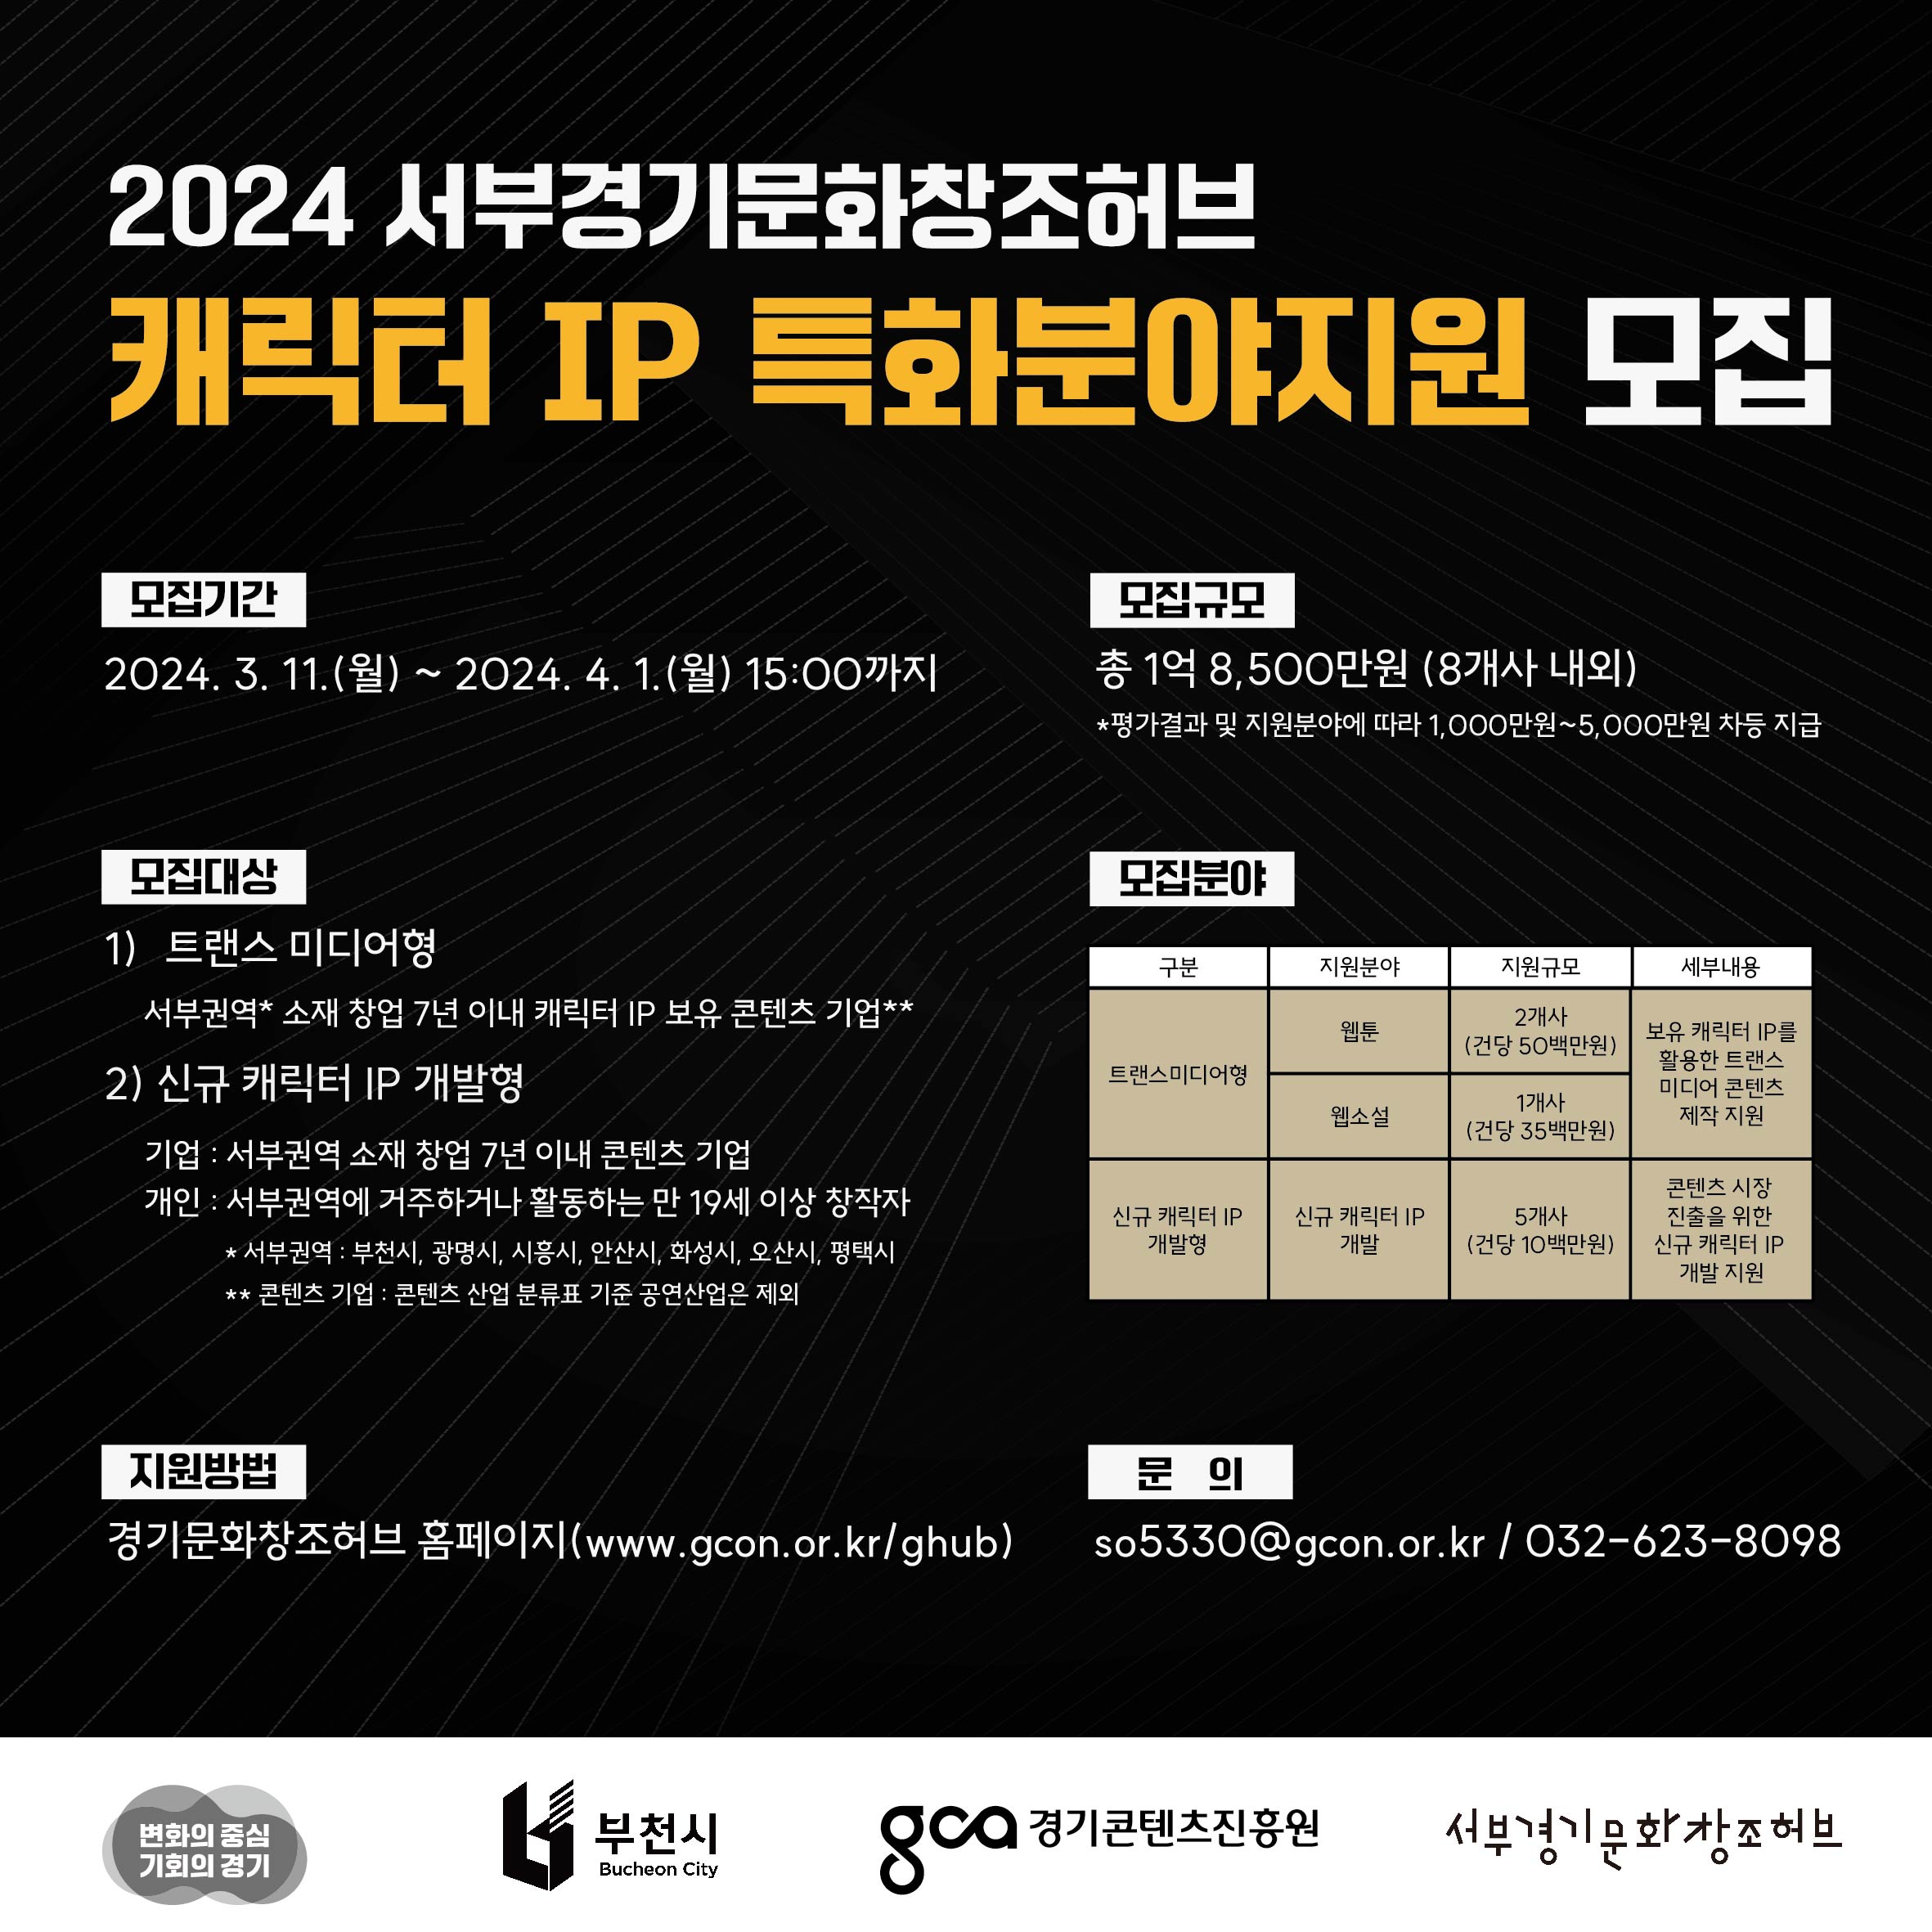 2024년 서부권역 캐릭터 IP 특화분야지원 참가기업 및 창작자 모집